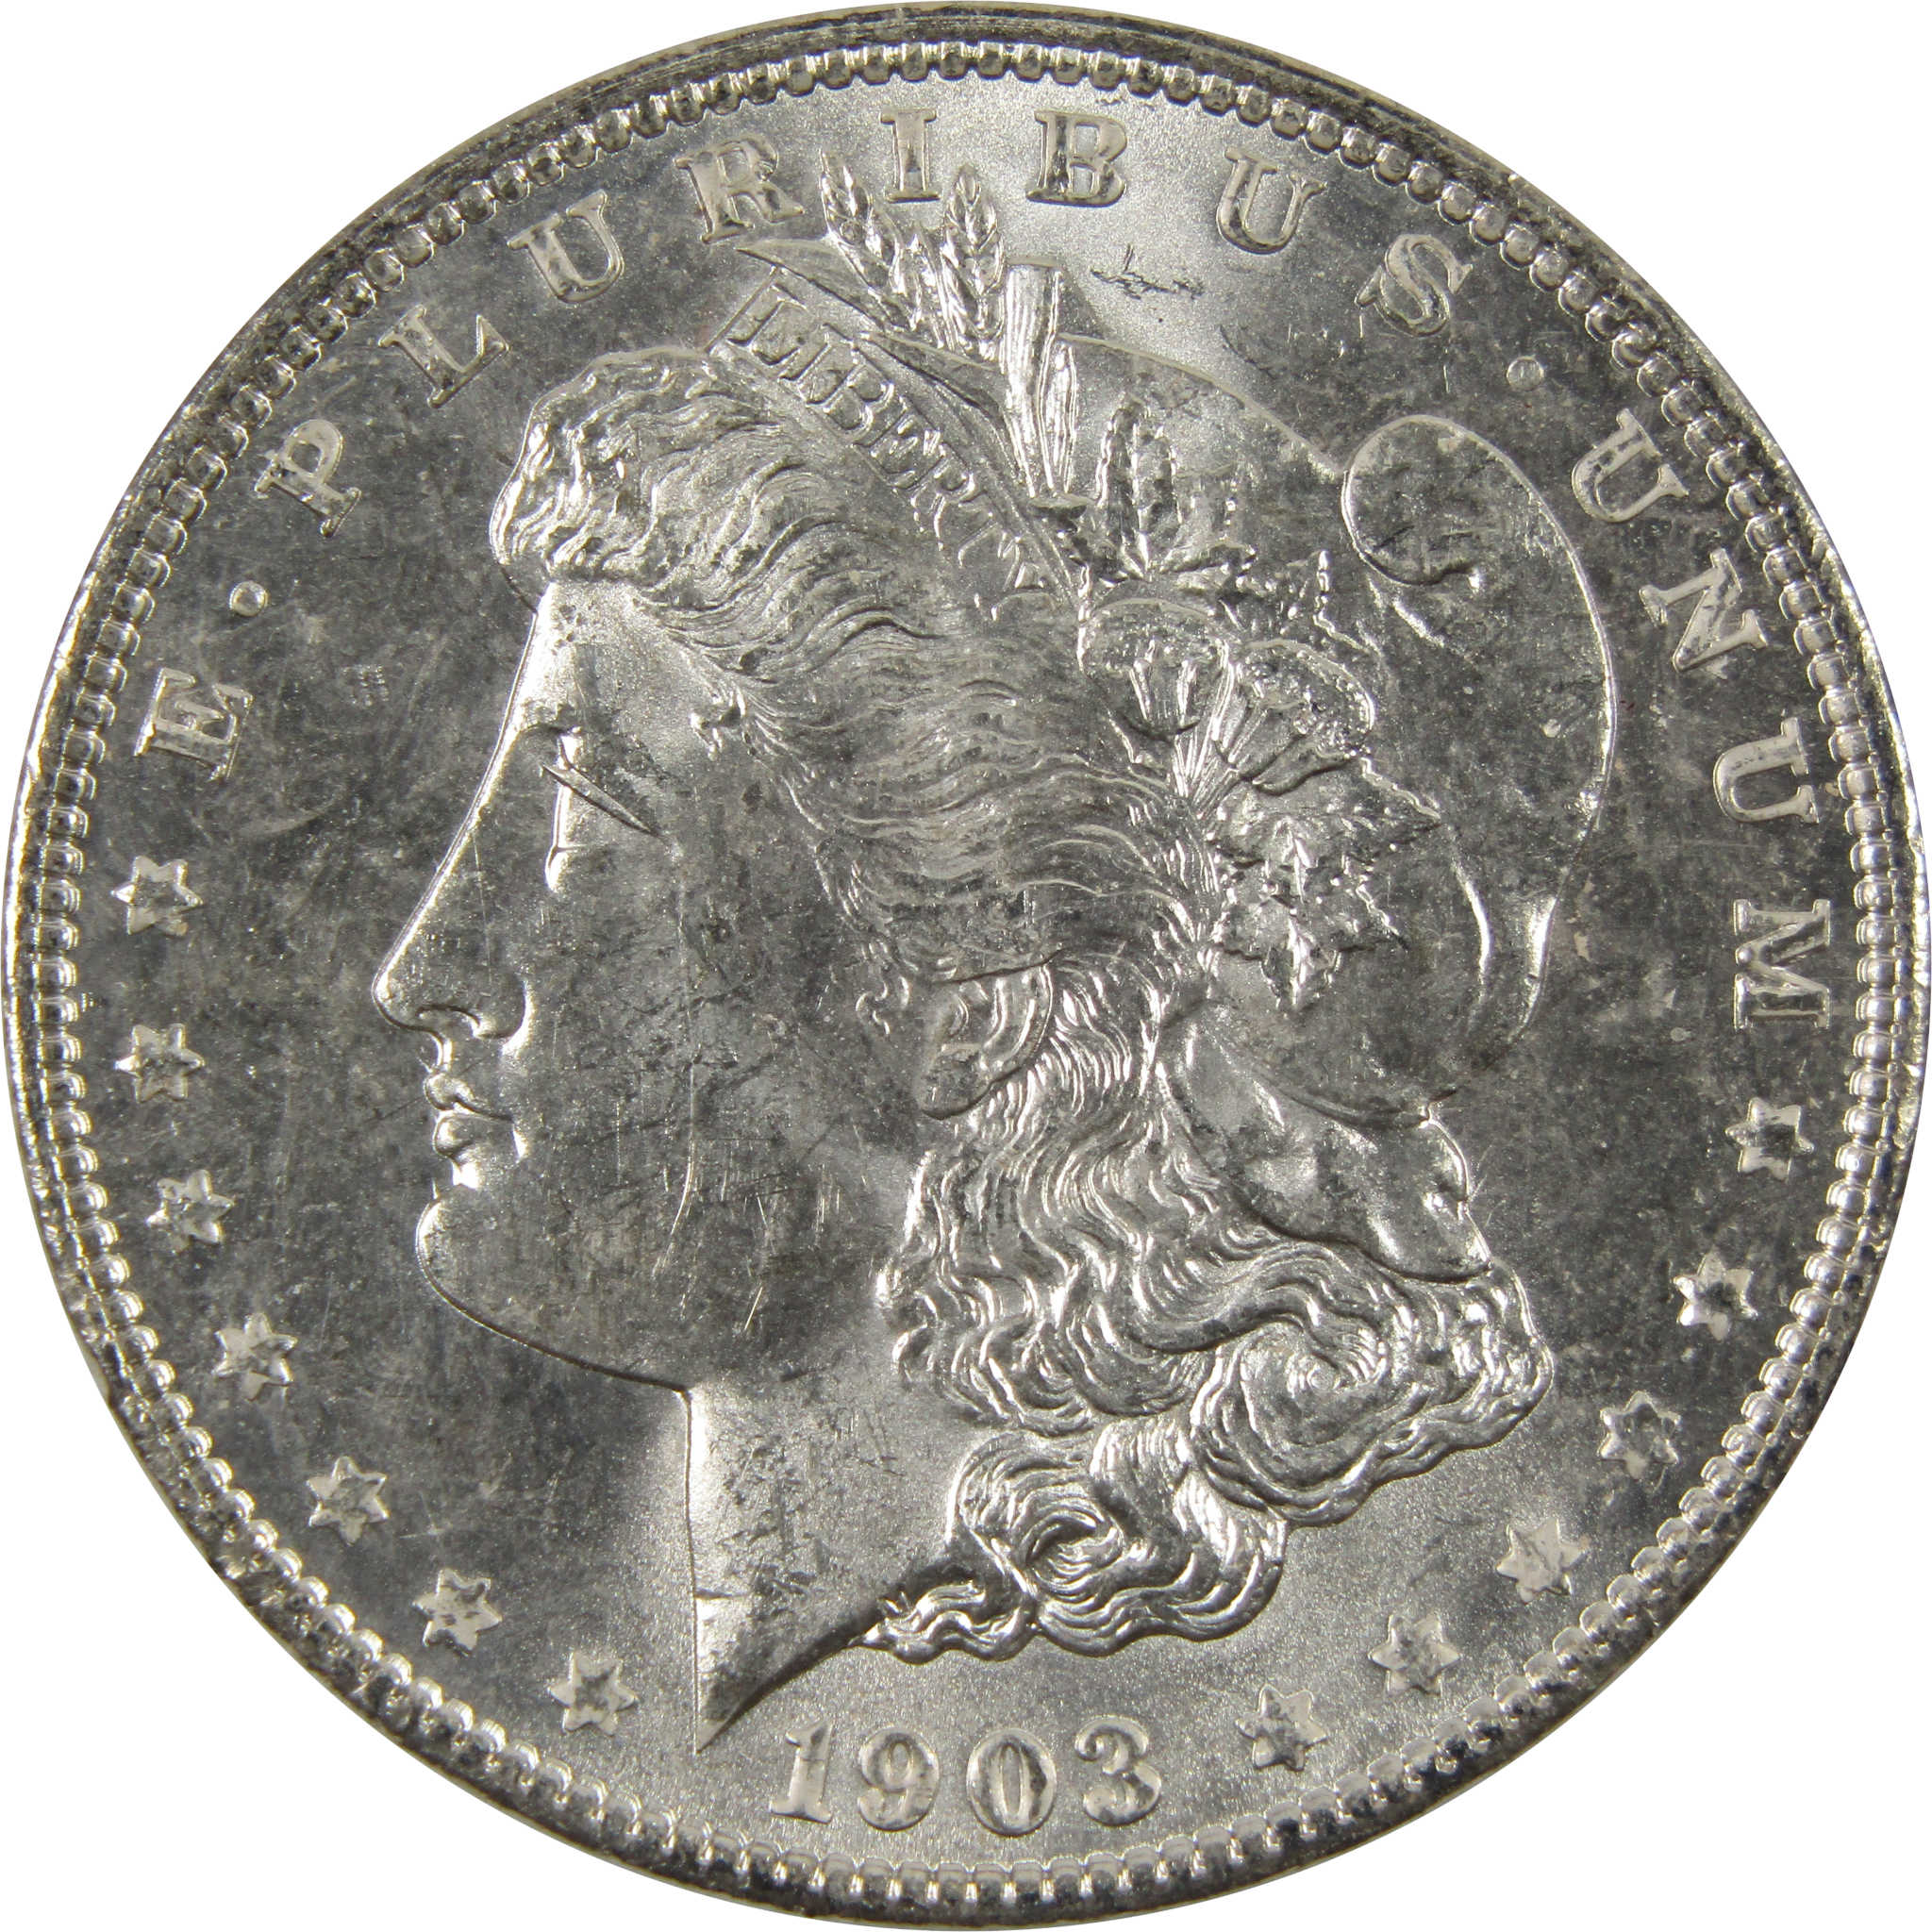 1903 O Morgan Dollar BU Choice Uncirculated 90% Silver $1 SKU:I7517 - Morgan coin - Morgan silver dollar - Morgan silver dollar for sale - Profile Coins &amp; Collectibles